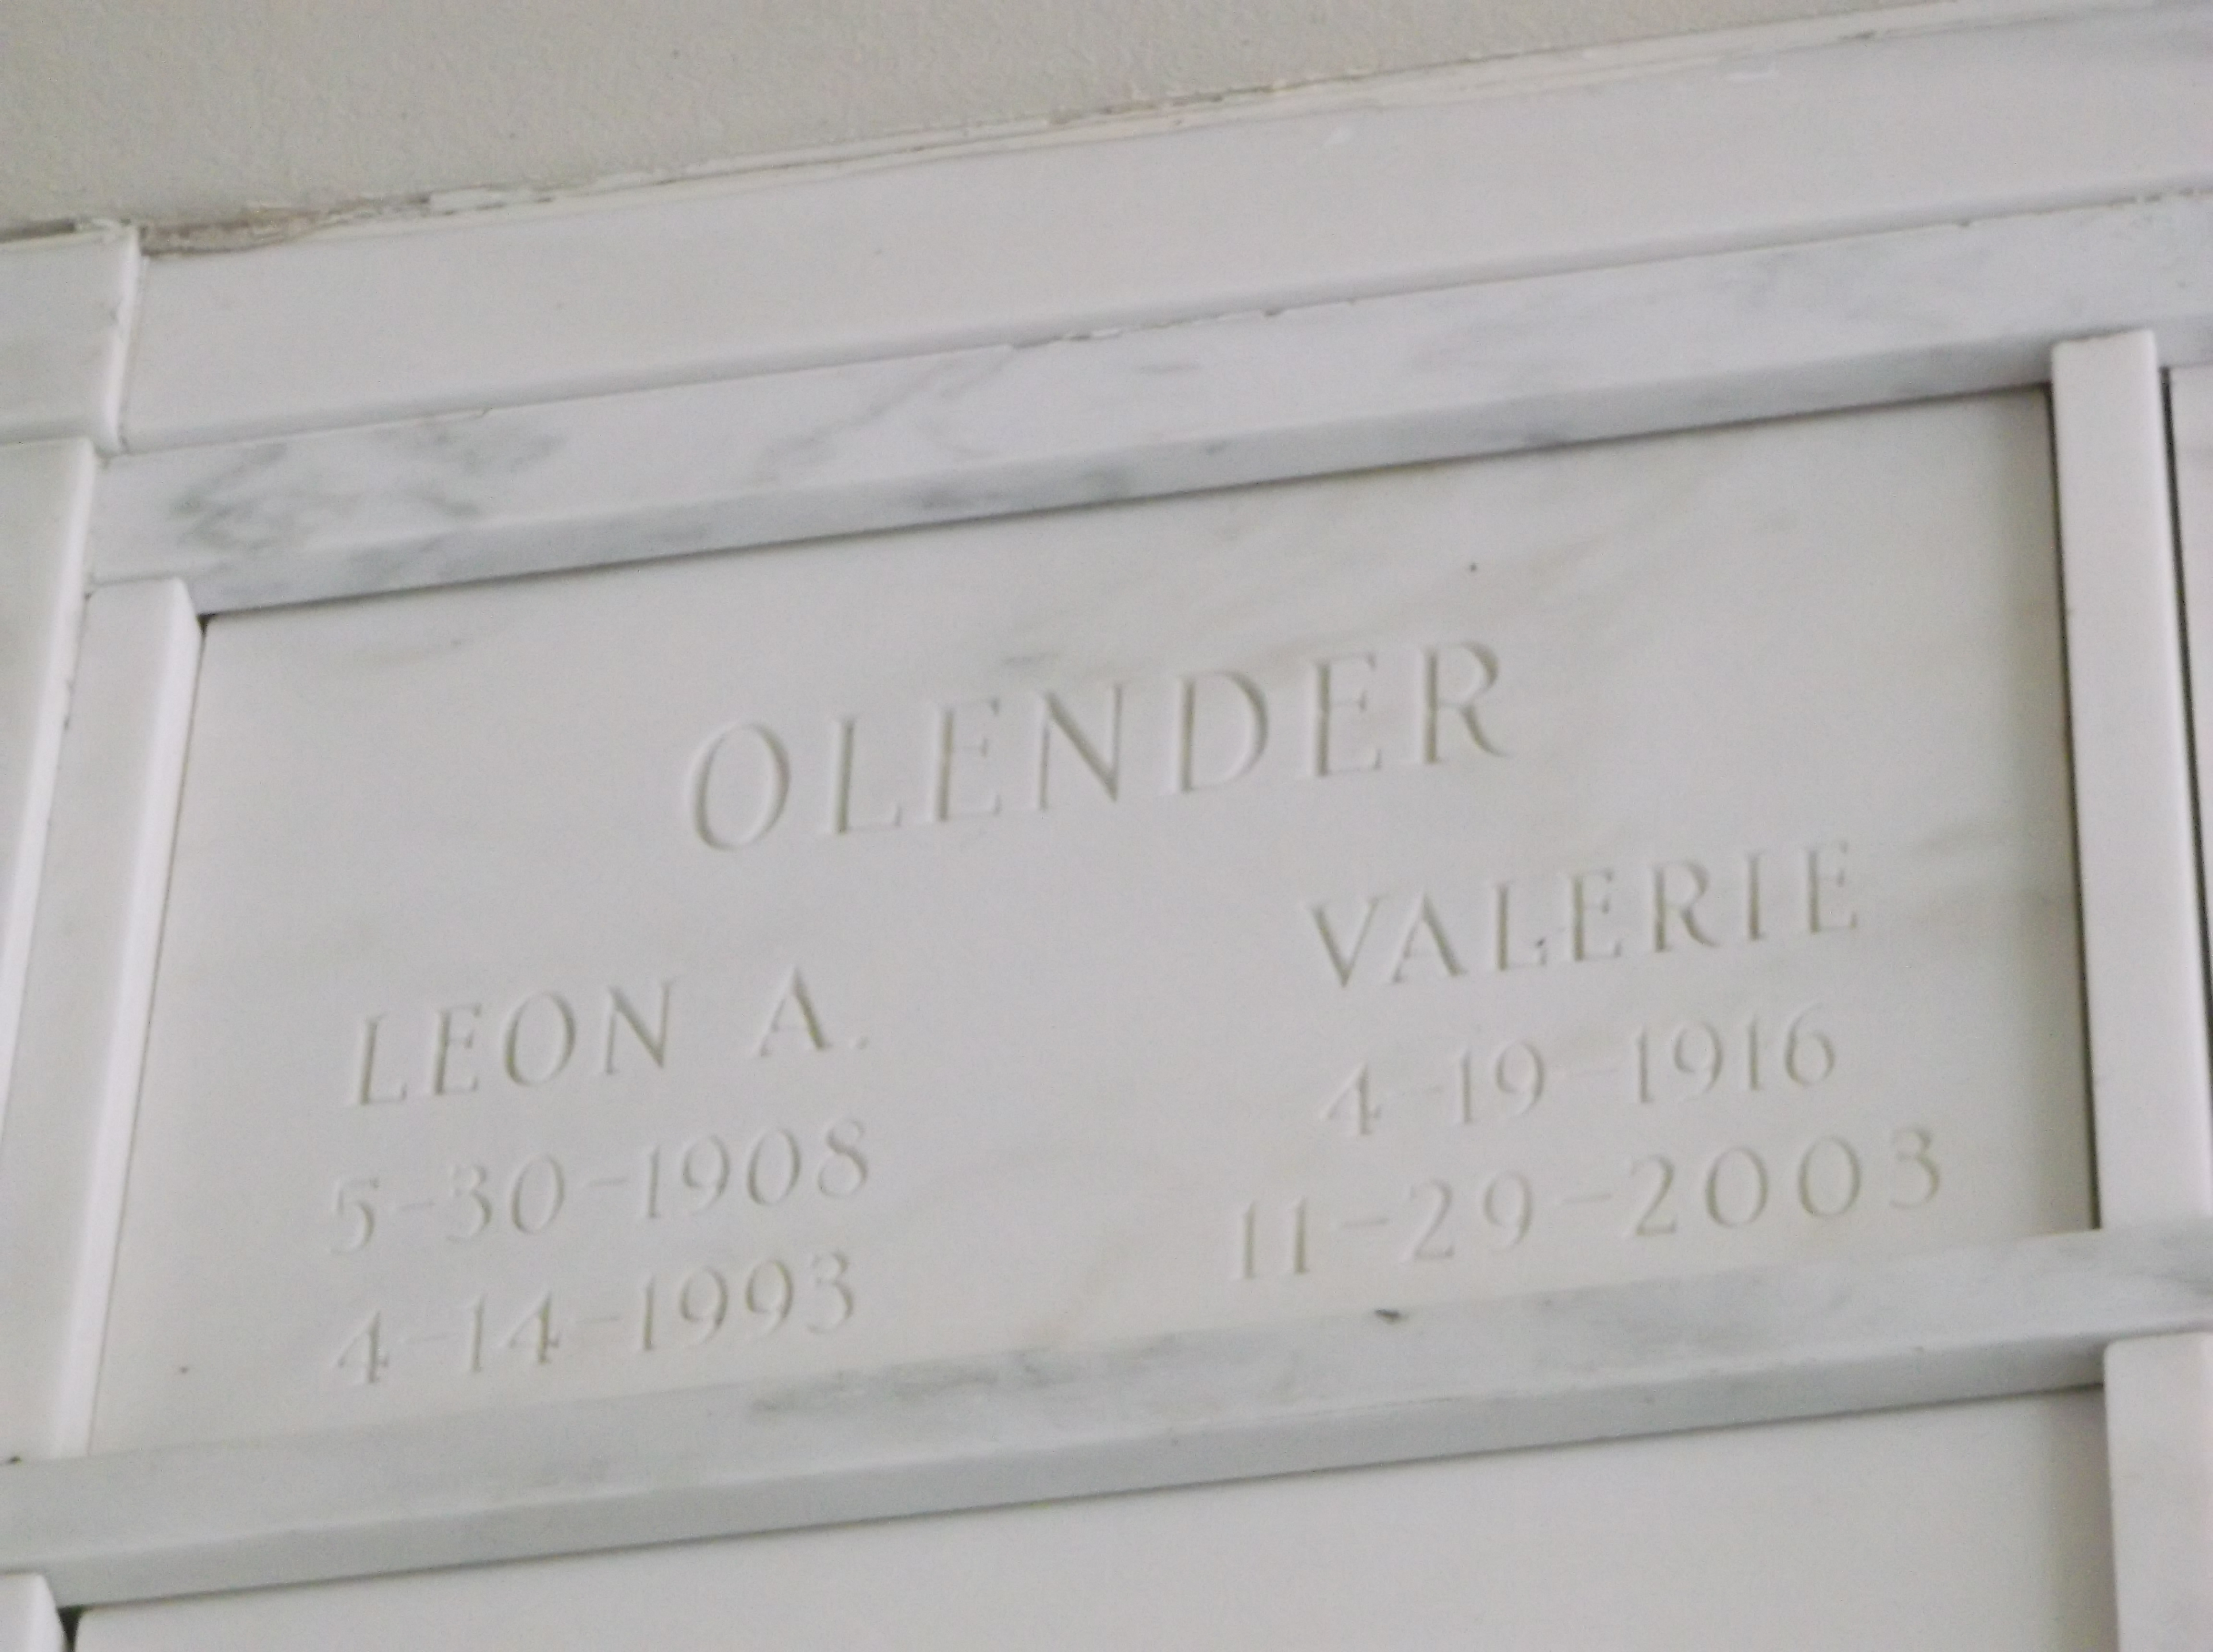 Valerie Olender